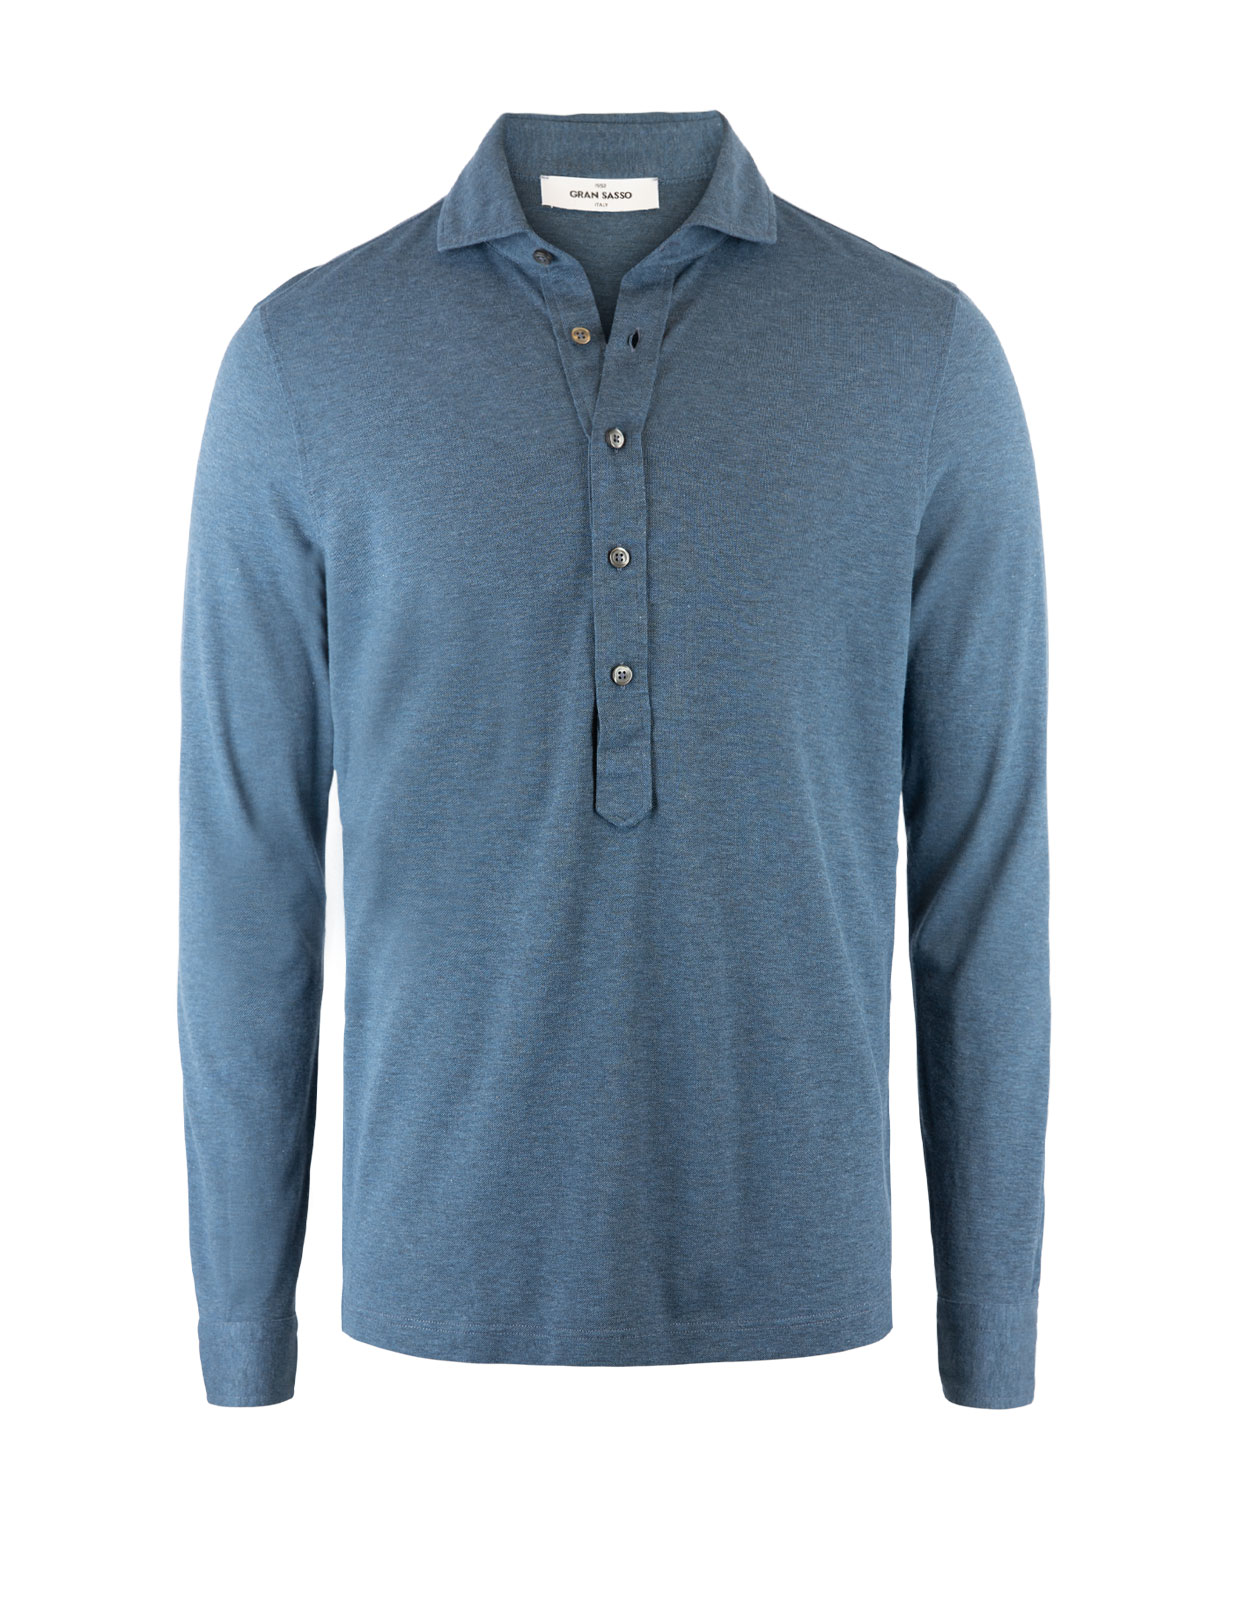 Jersey Popover Shirt Blue Melange Stl 56